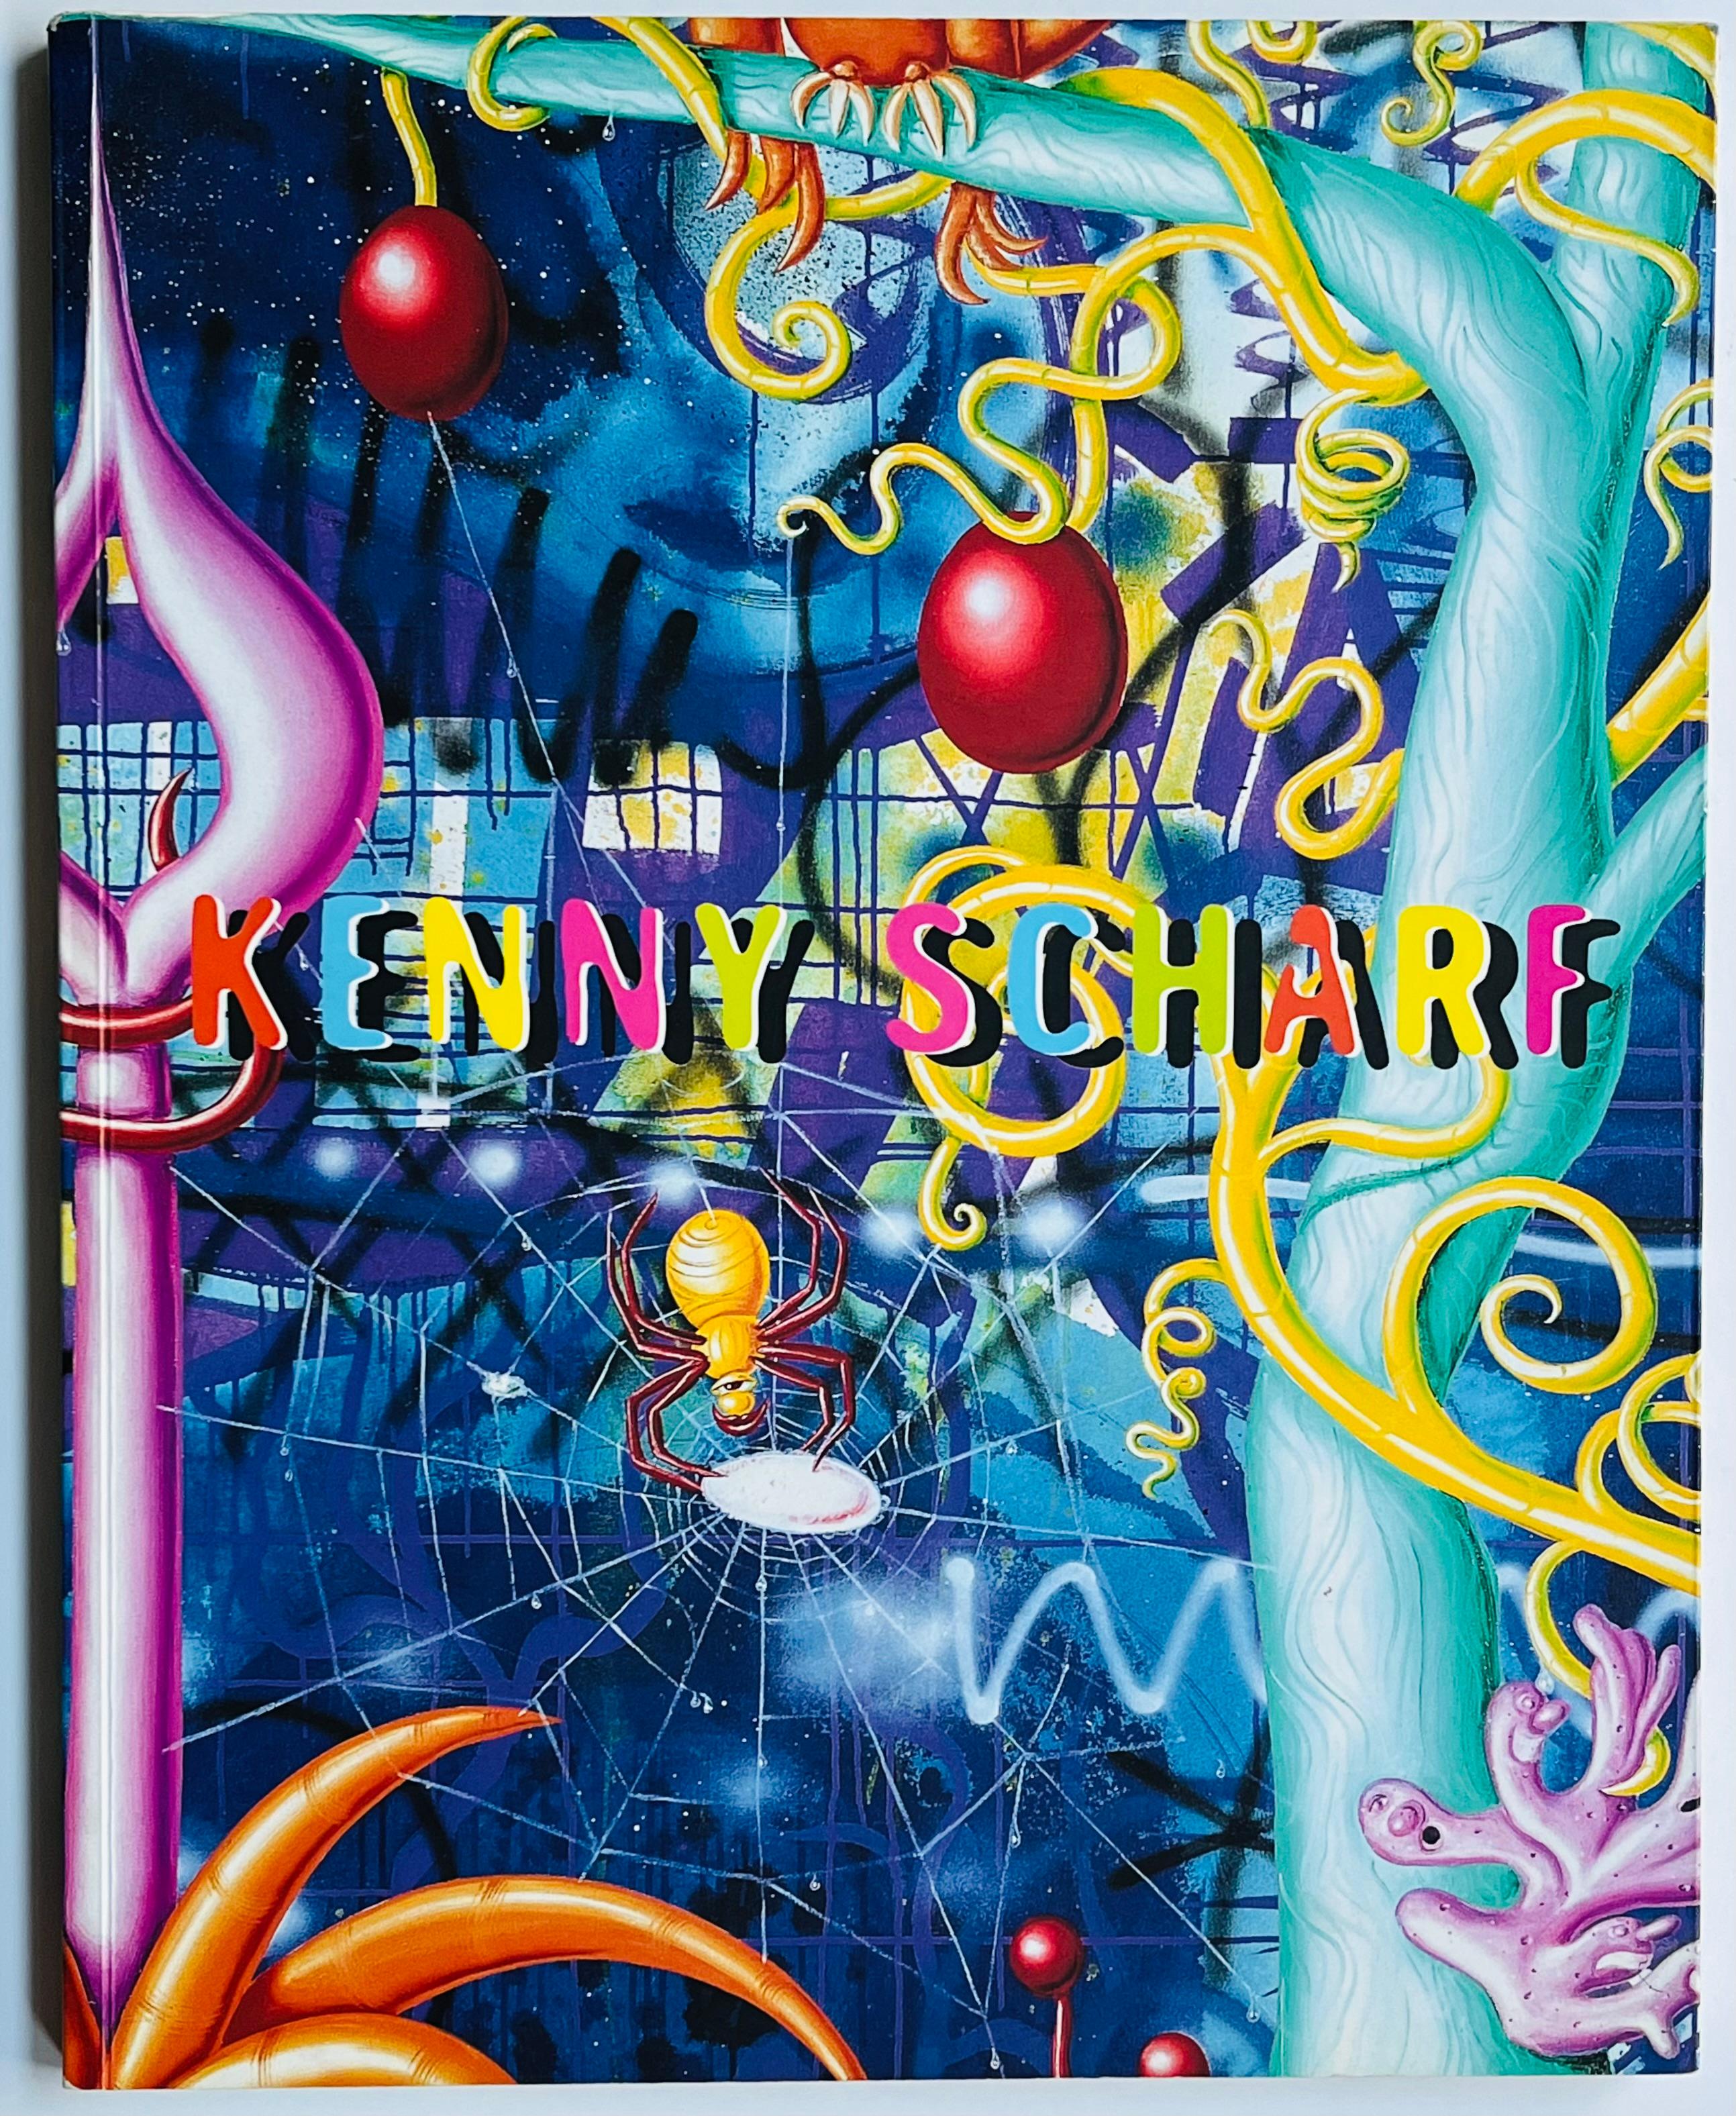 Kenny Scharf 1997-1998 : Un ensemble de 2 catalogues d'exposition individuels de Kenny Scharf signés à la main et publiés à l'occasion de.. : 

Kenny Scharf Tony Shafrazi Gallery, New York 1998 : plus de 100 pages avec des couleurs vives et une